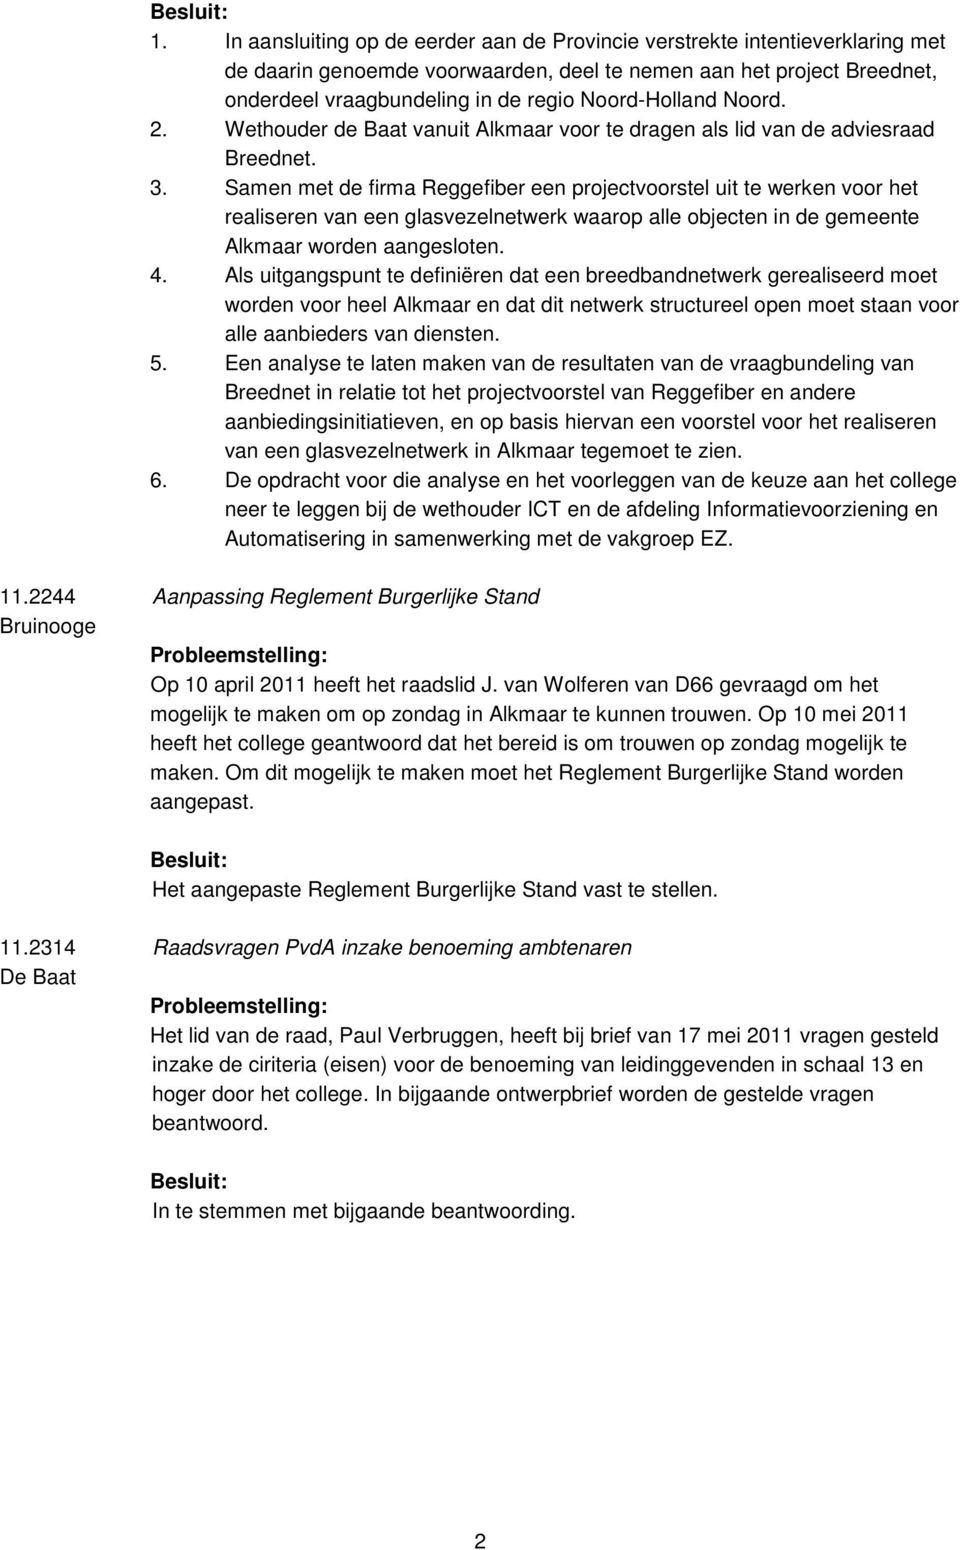 Samen met de firma Reggefiber een projectvoorstel uit te werken voor het realiseren van een glasvezelnetwerk waarop alle objecten in de gemeente Alkmaar worden aangesloten. 4.